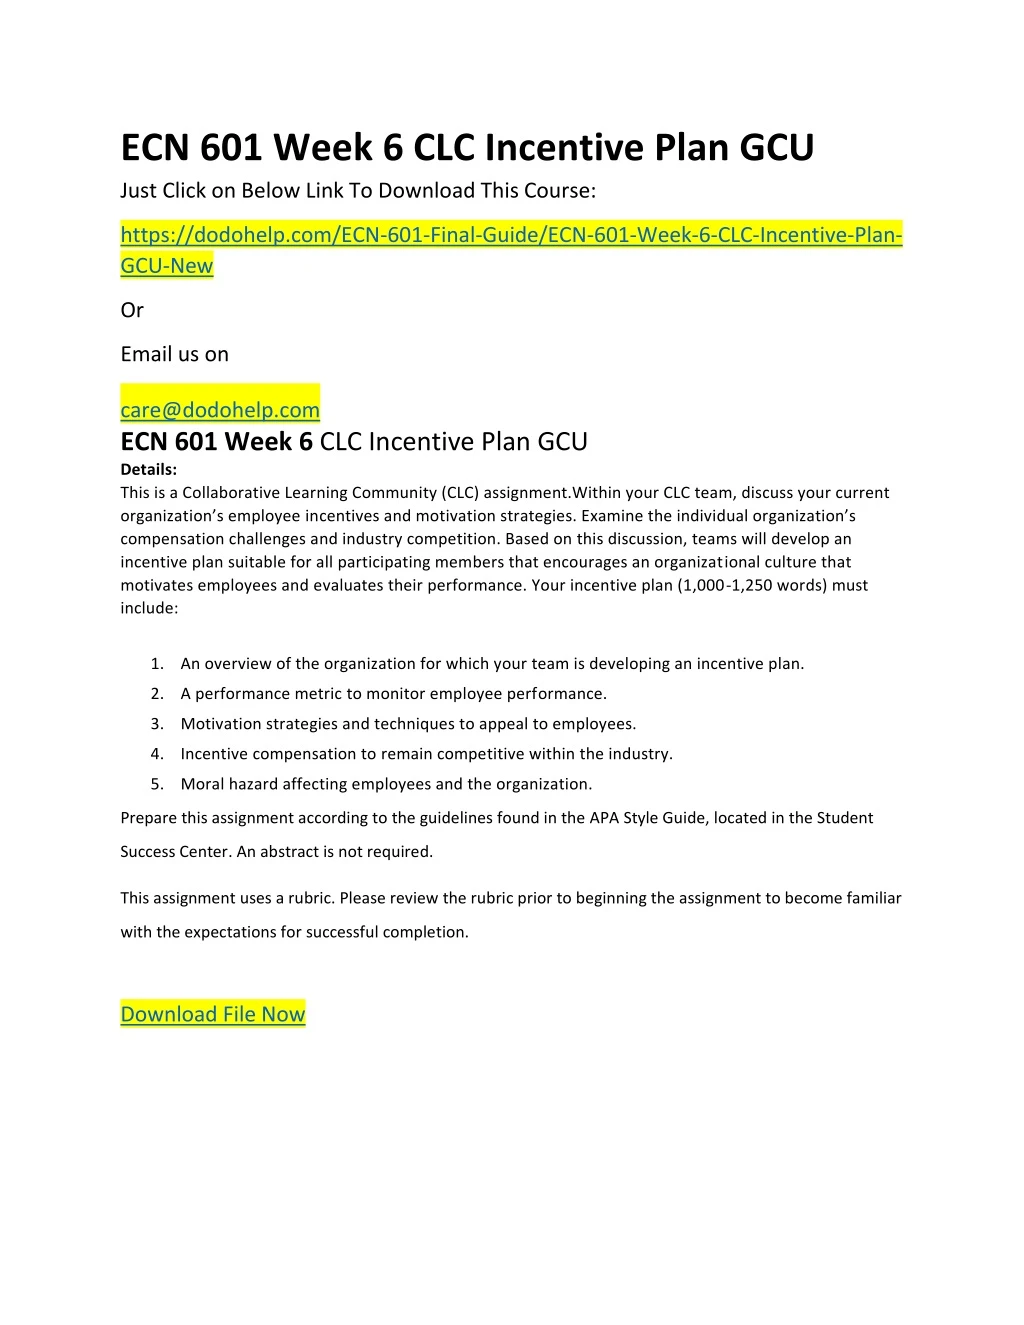 ecn 601 week 6 clc incentive plan gcu just click